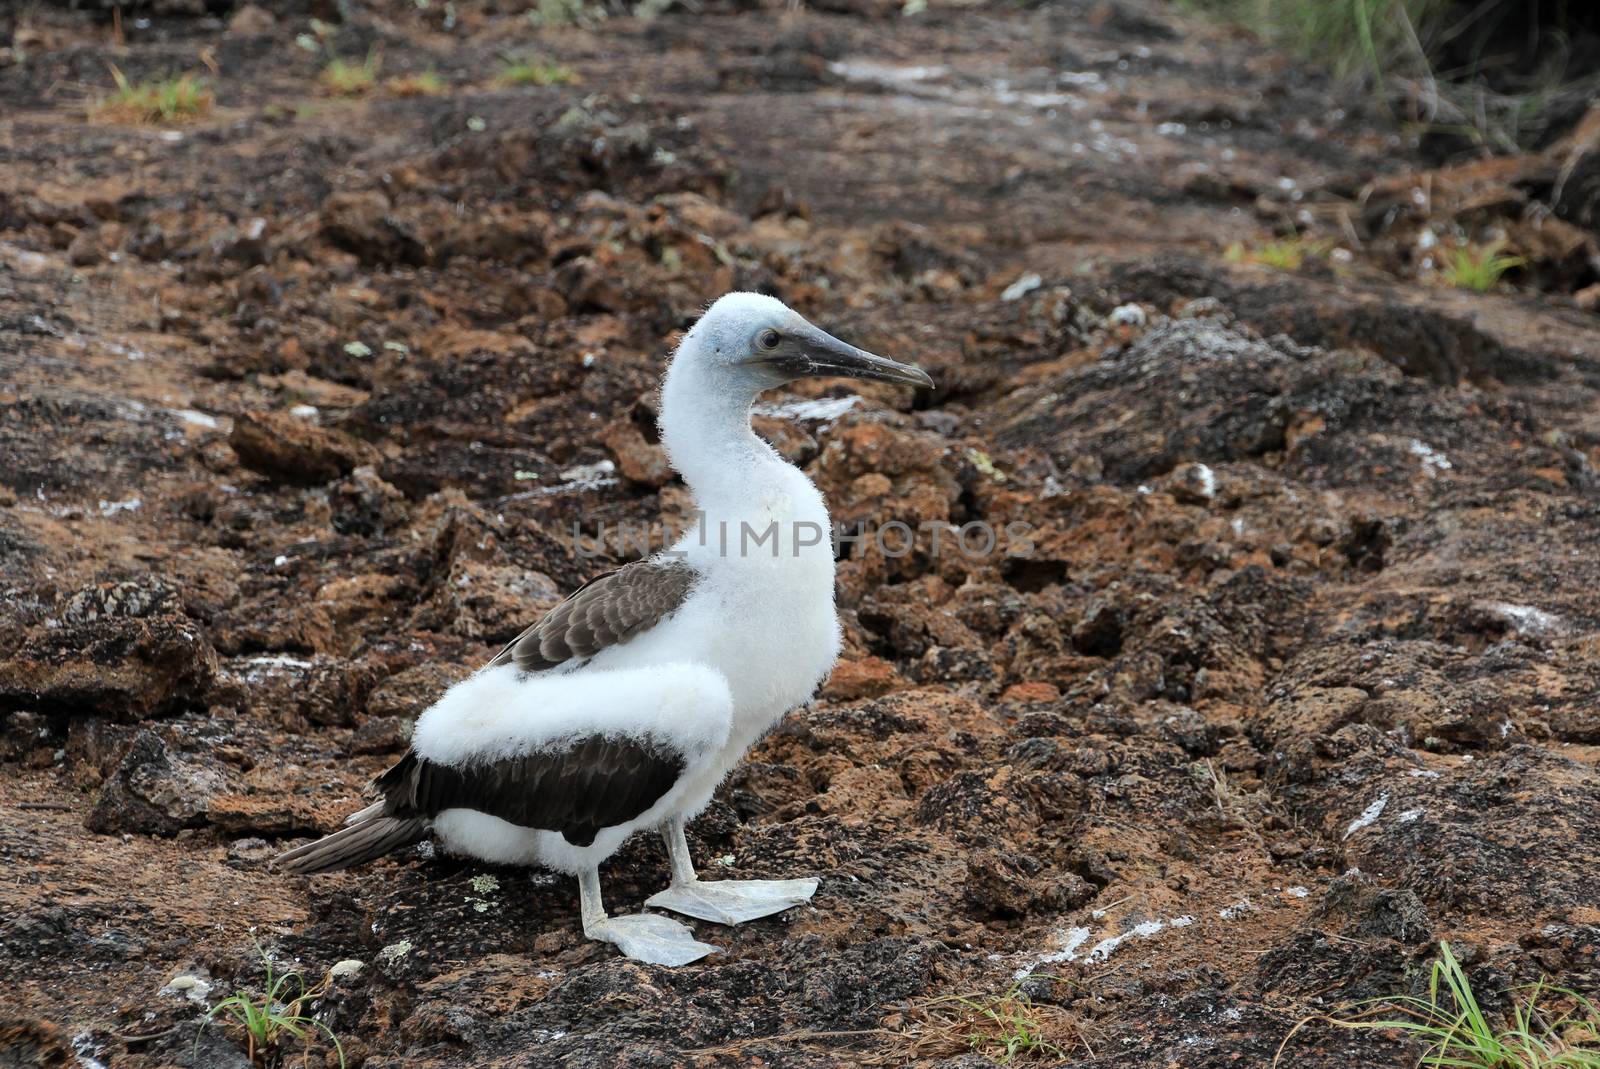 Blue footed booby, baby bird, sula nebouxii, Galapagos Ecuador